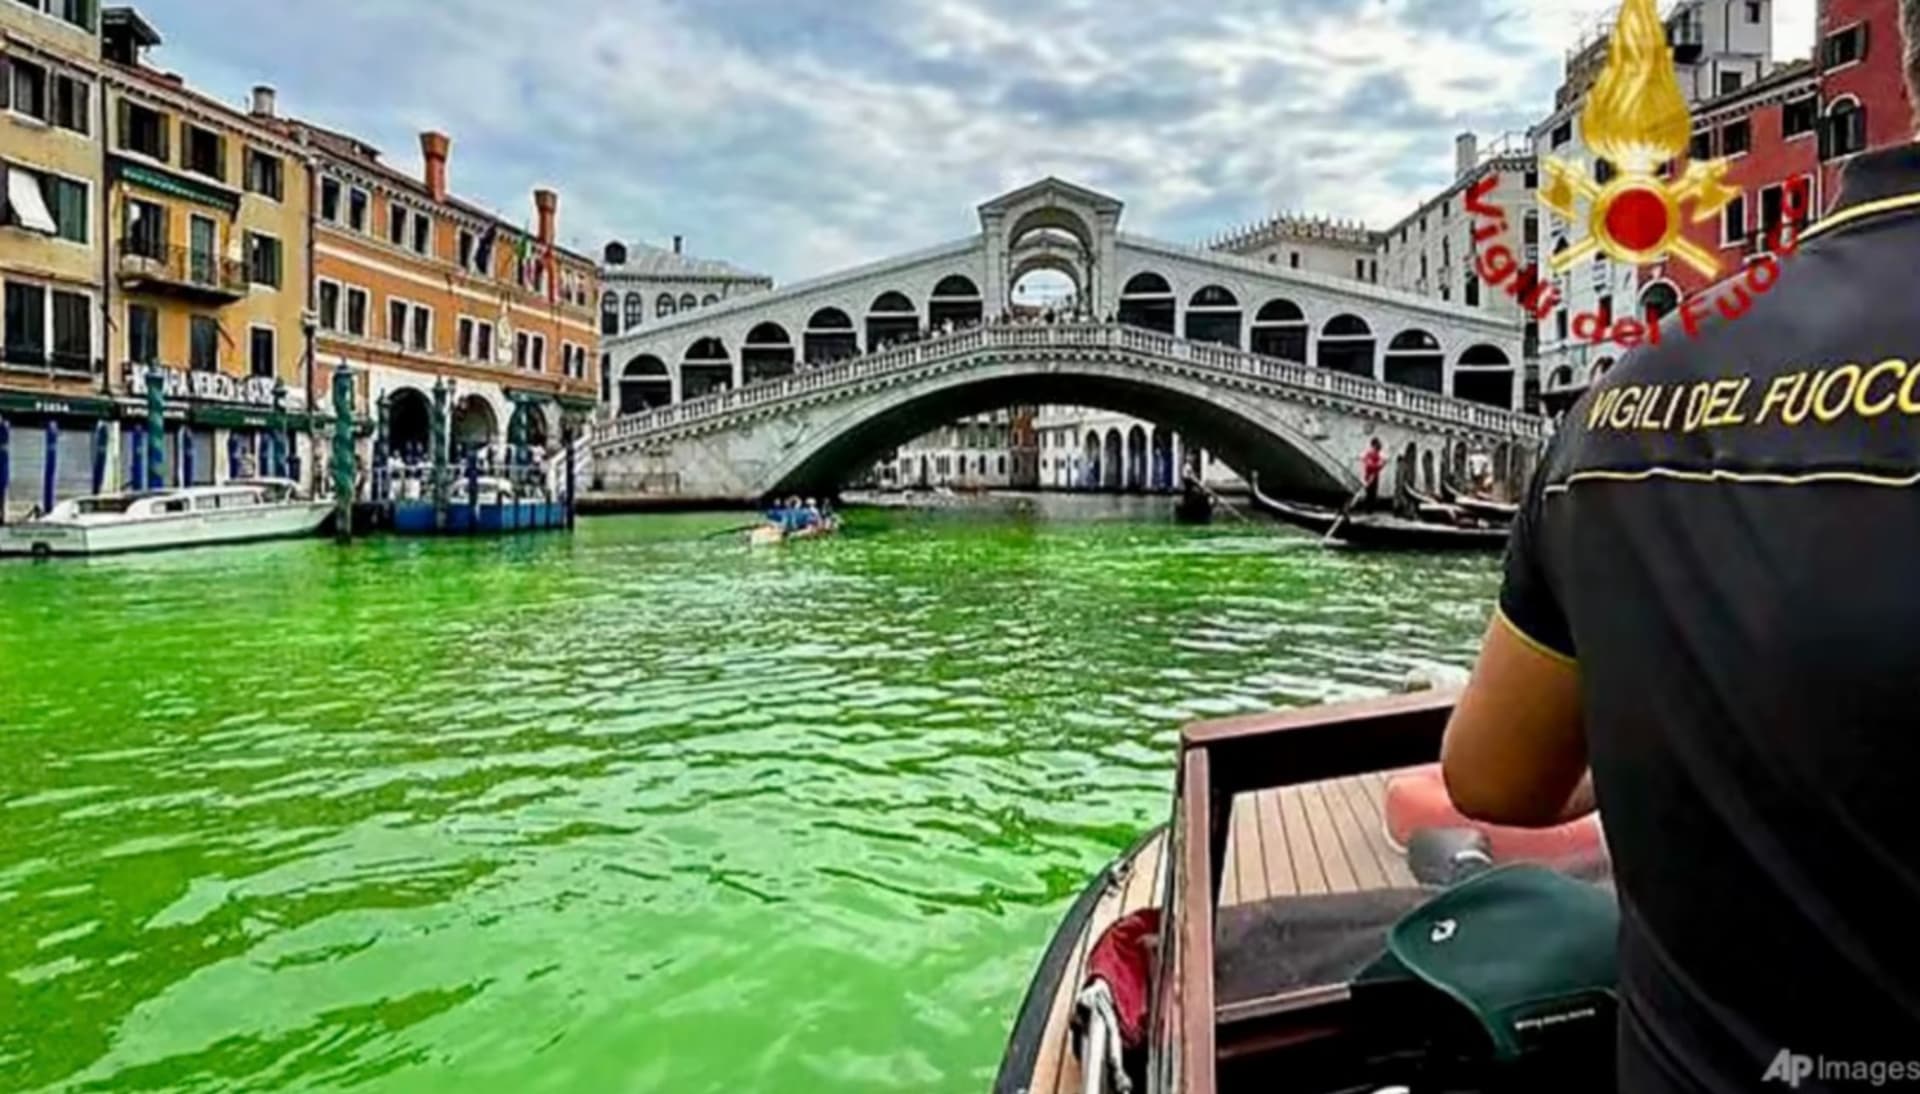 Canal Grande v Benátkách se zbarvil do fluoreskující zelené.